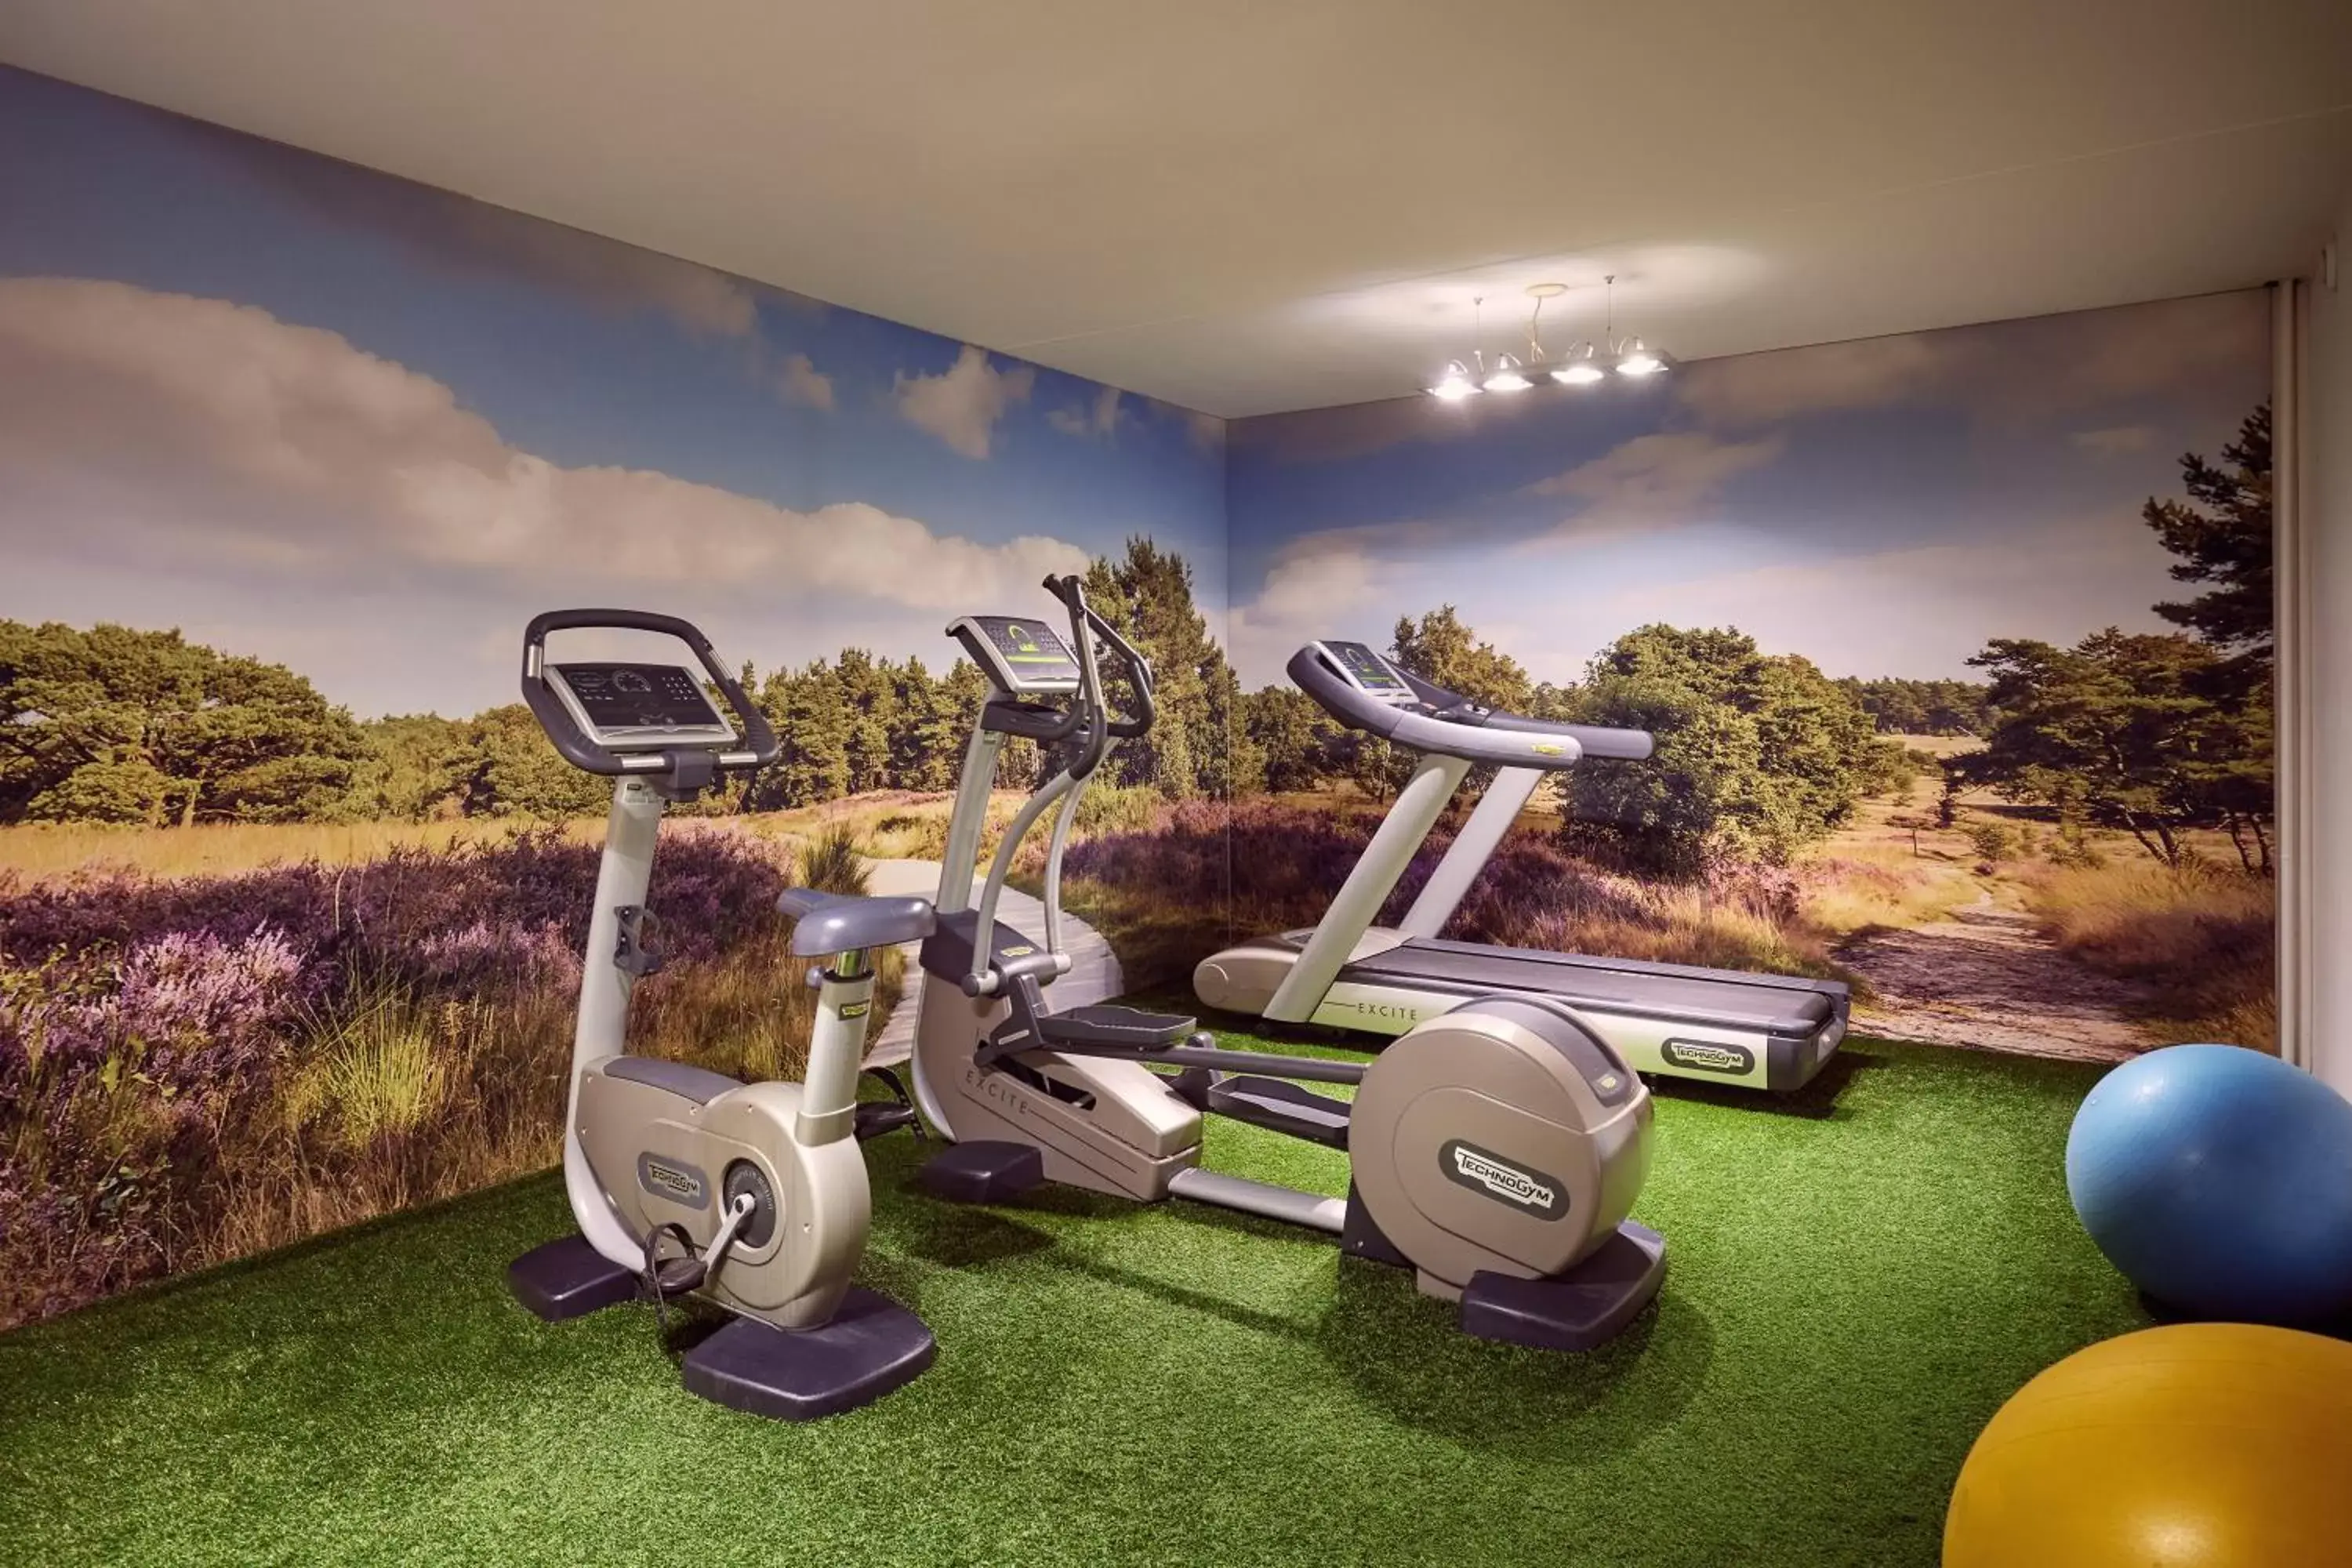 Fitness centre/facilities, Fitness Center/Facilities in Van der Valk Hotel Arnhem